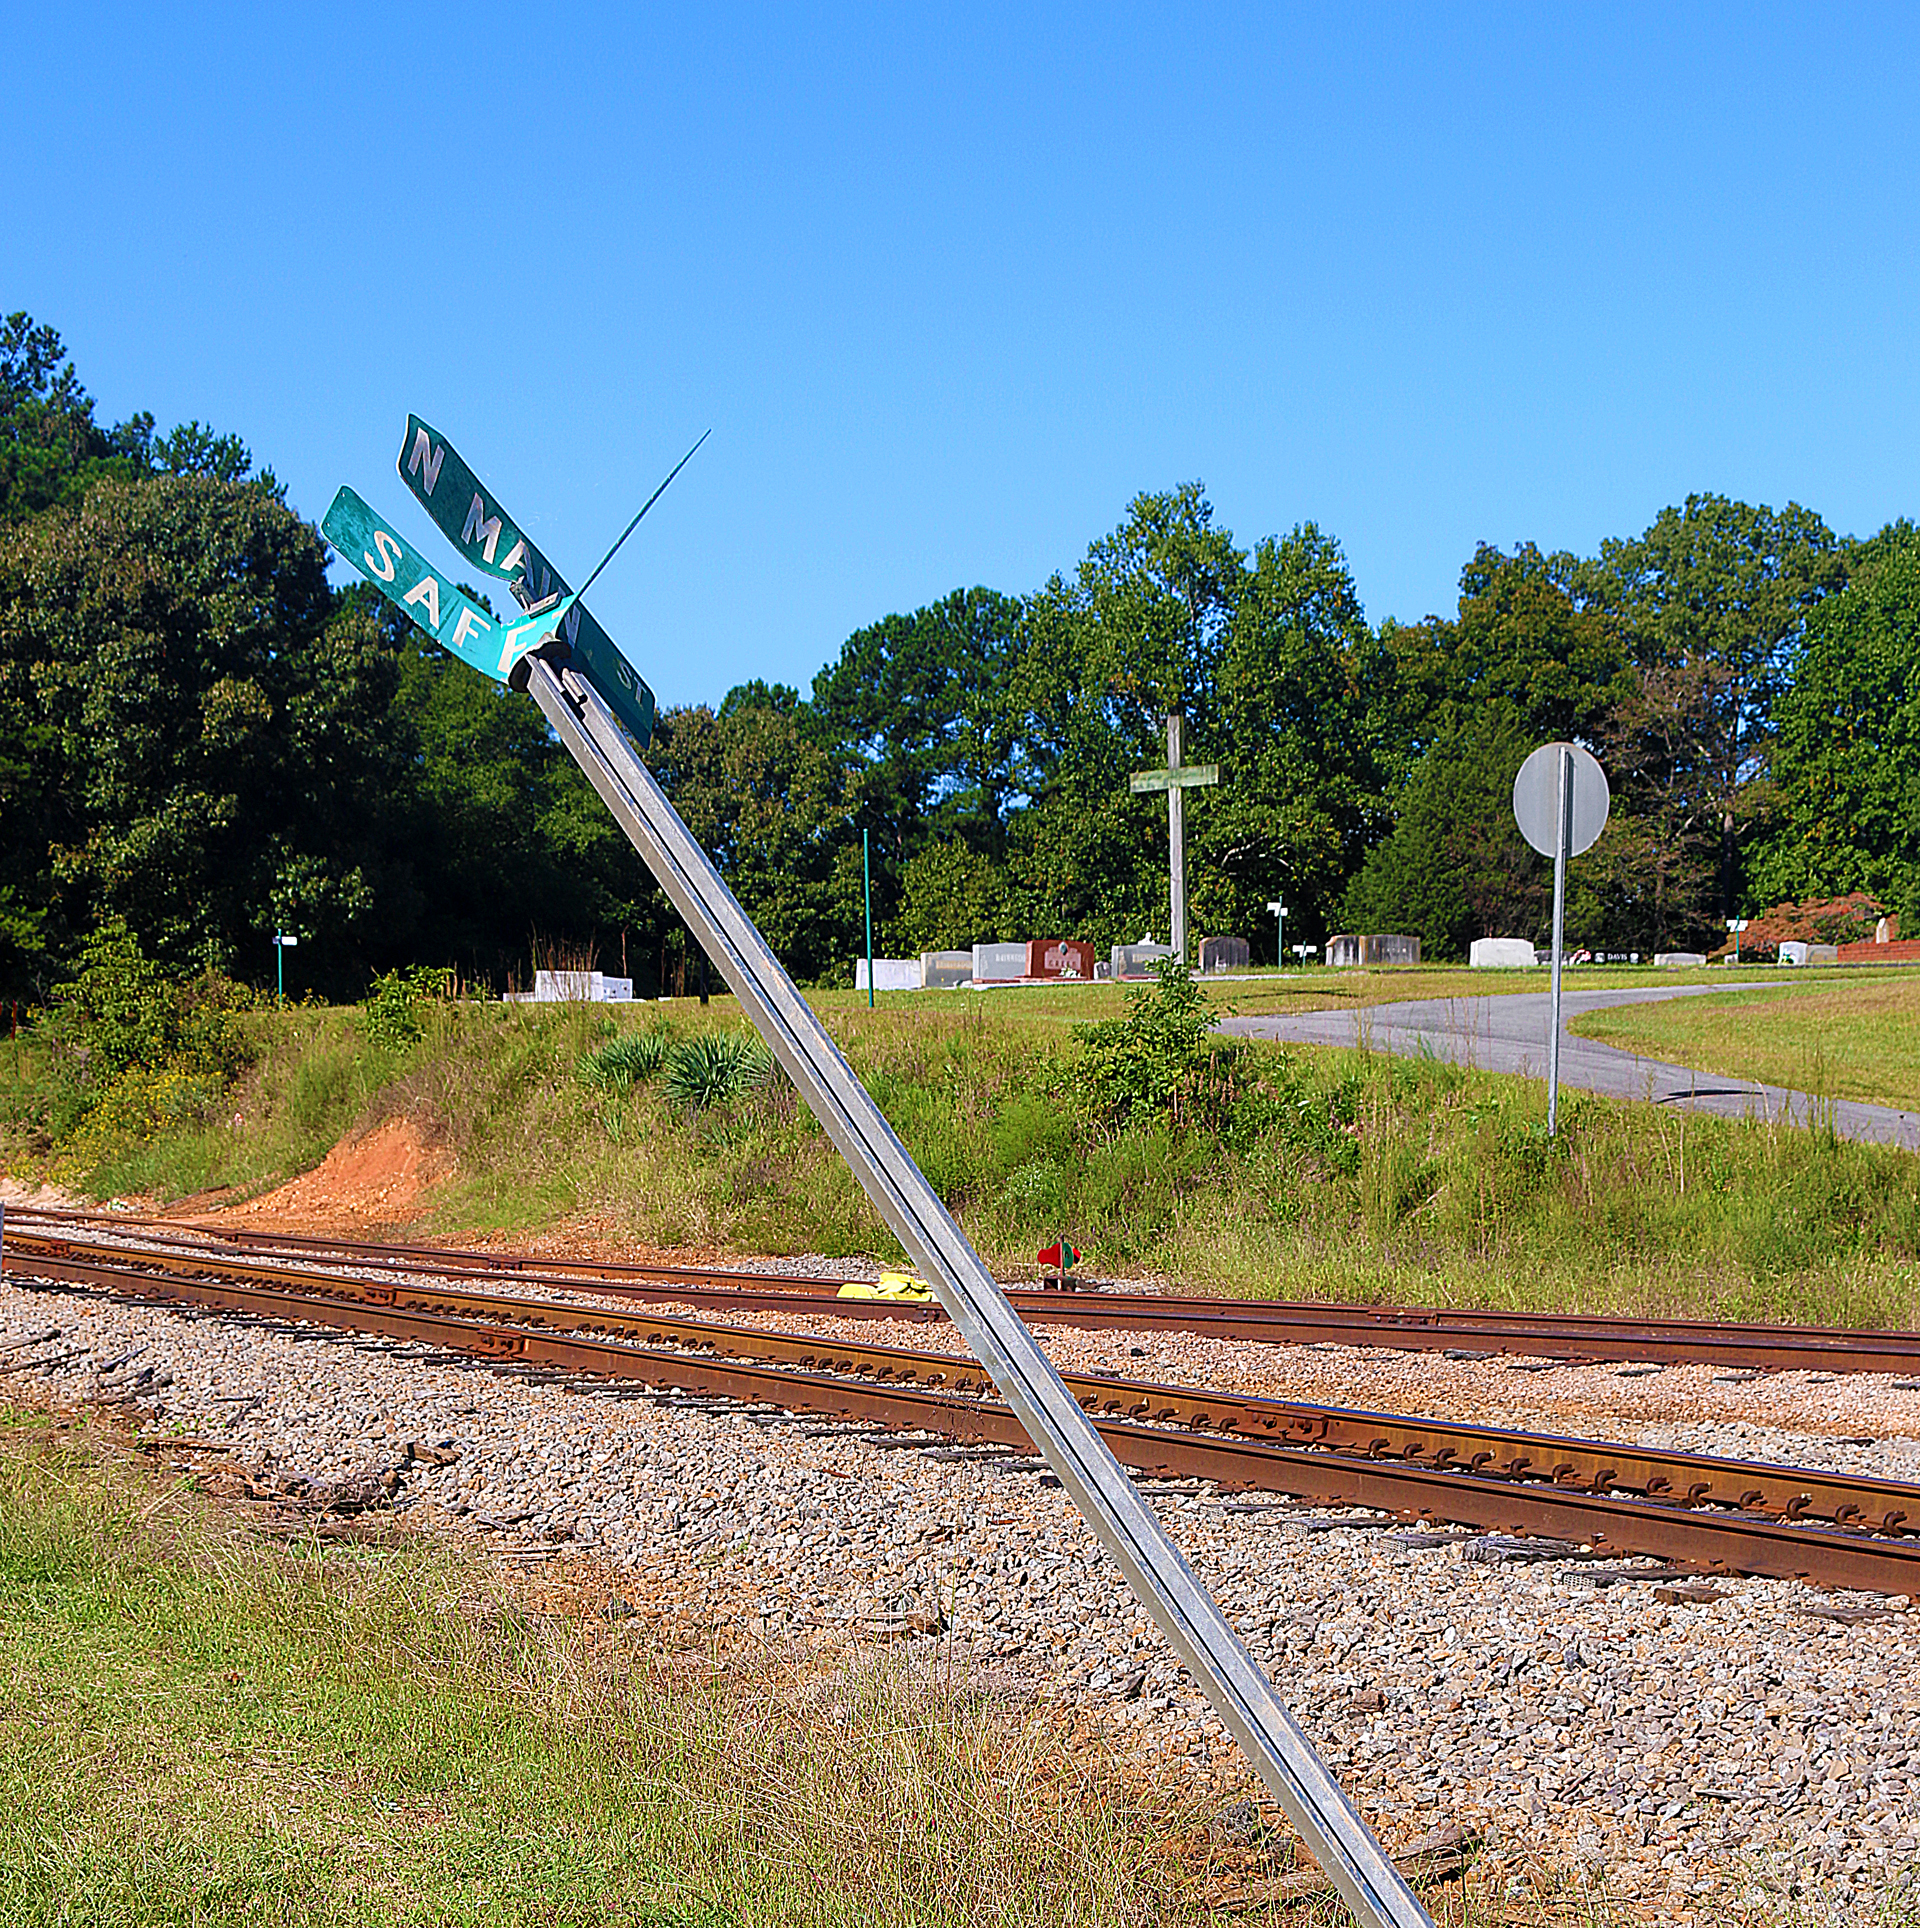 a pole on a train track